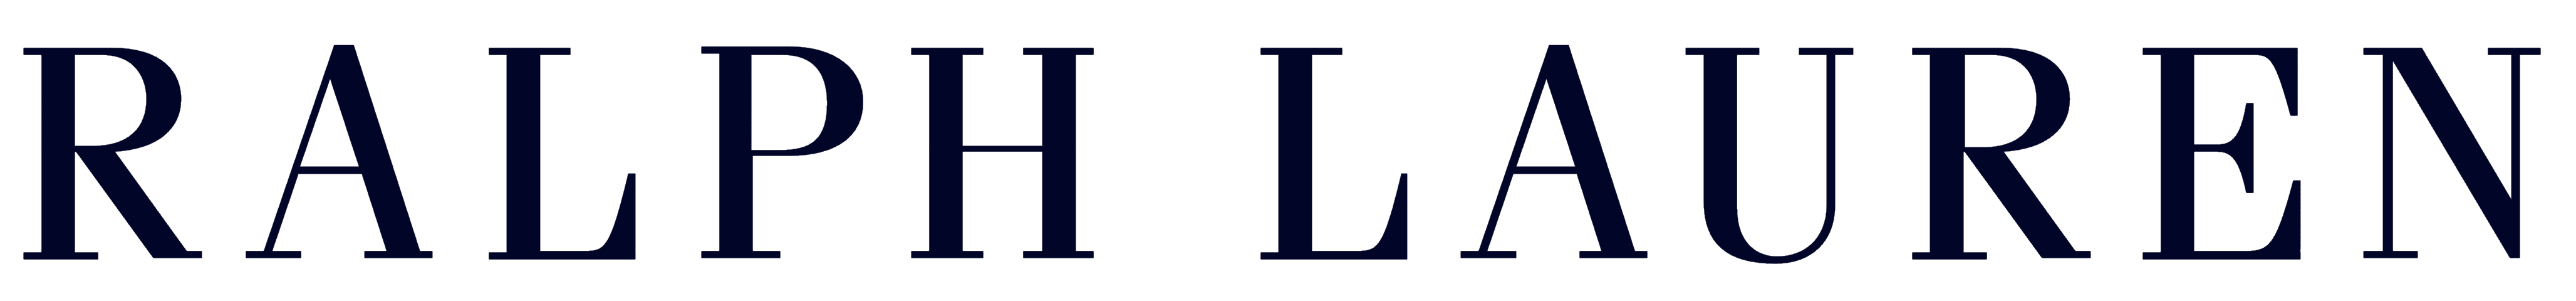 Lauren Logo - Ralph Lauren